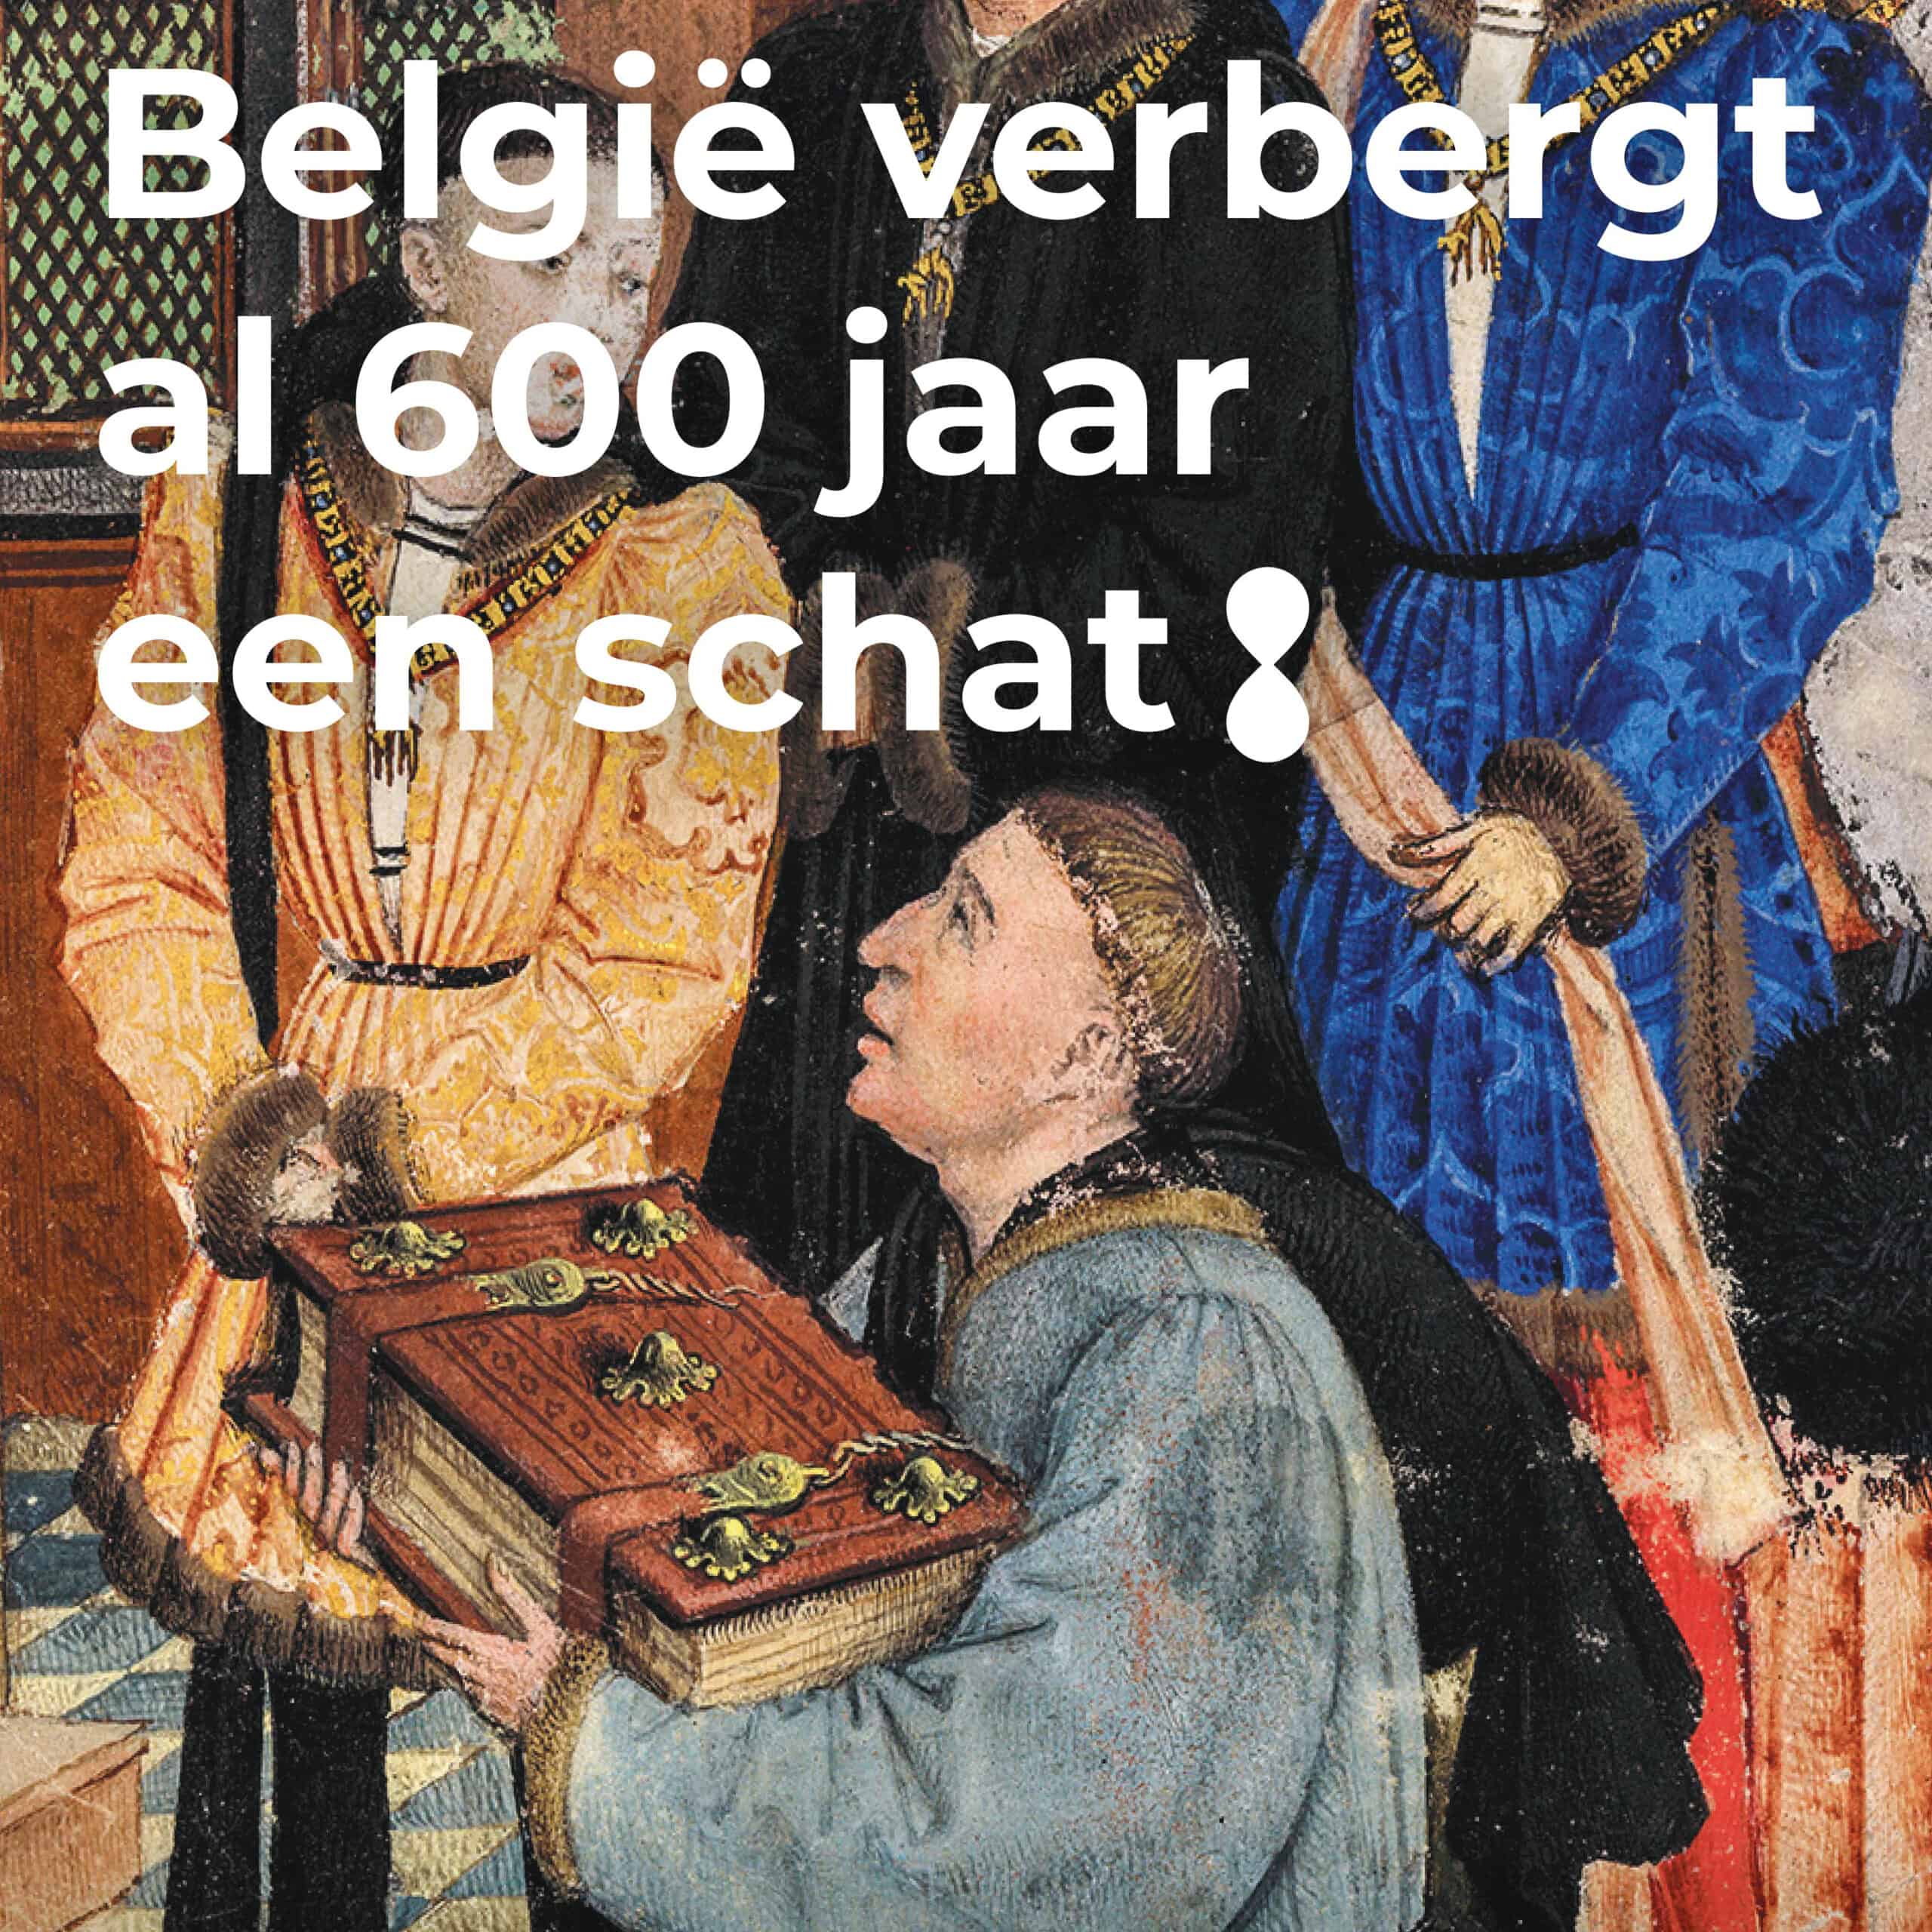 Belgi"verbergt al 600 jaar een schat